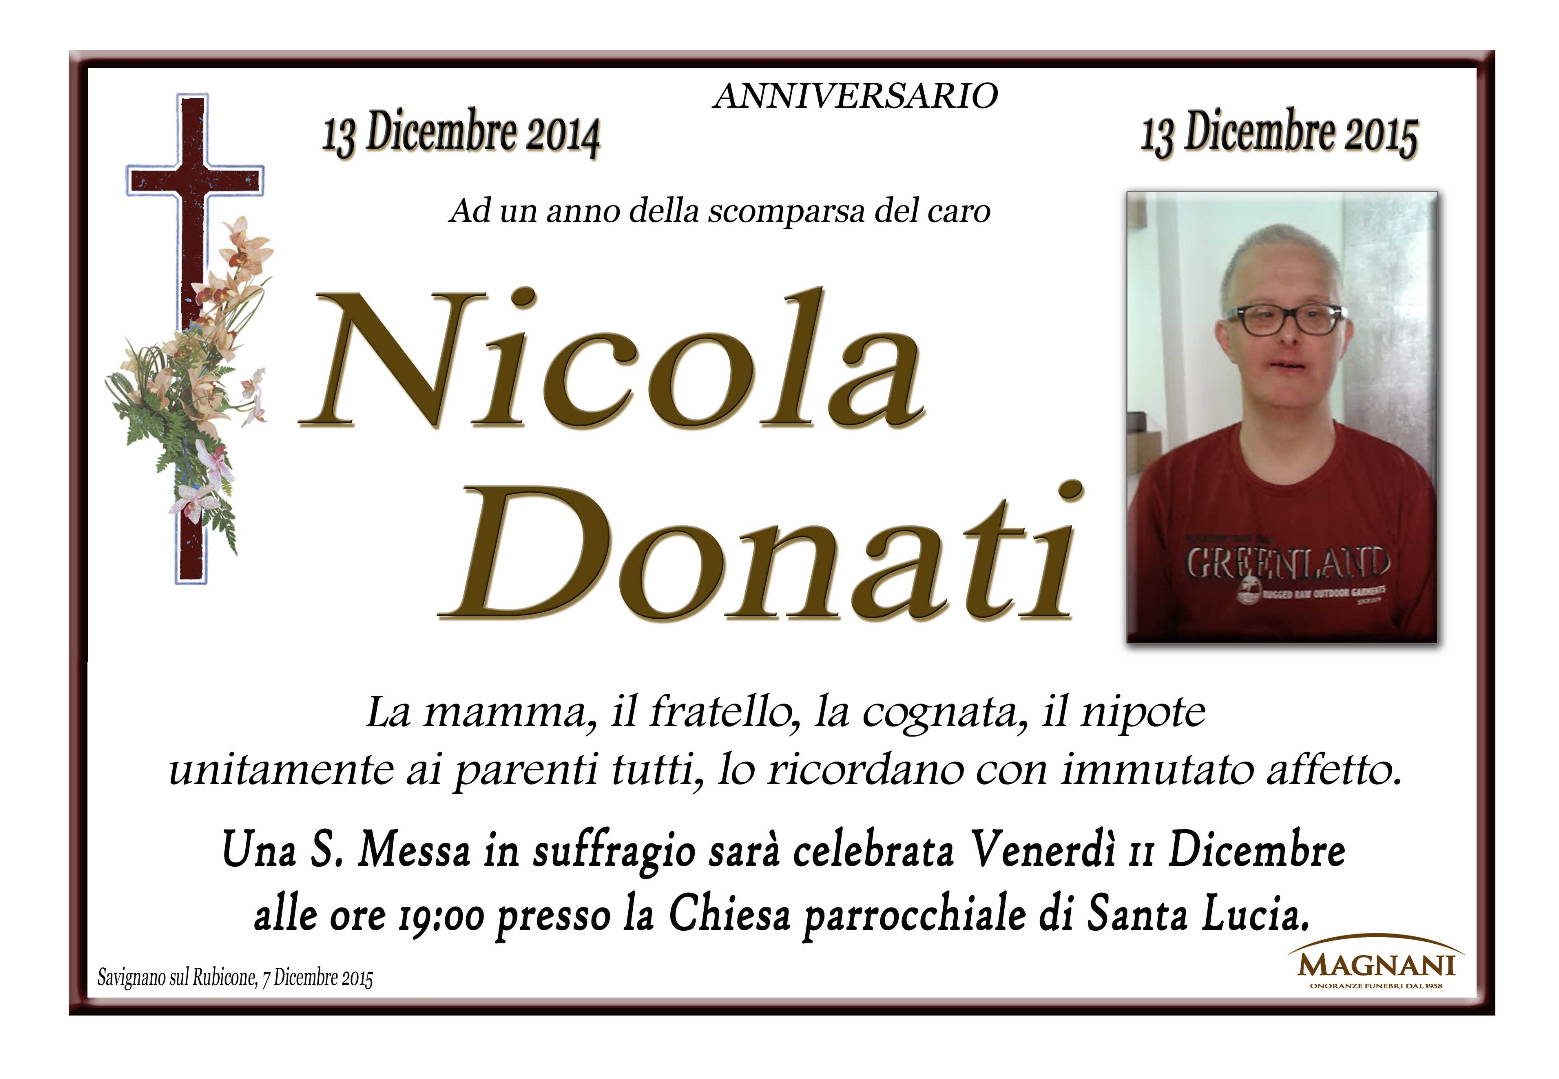 Nicola Donati